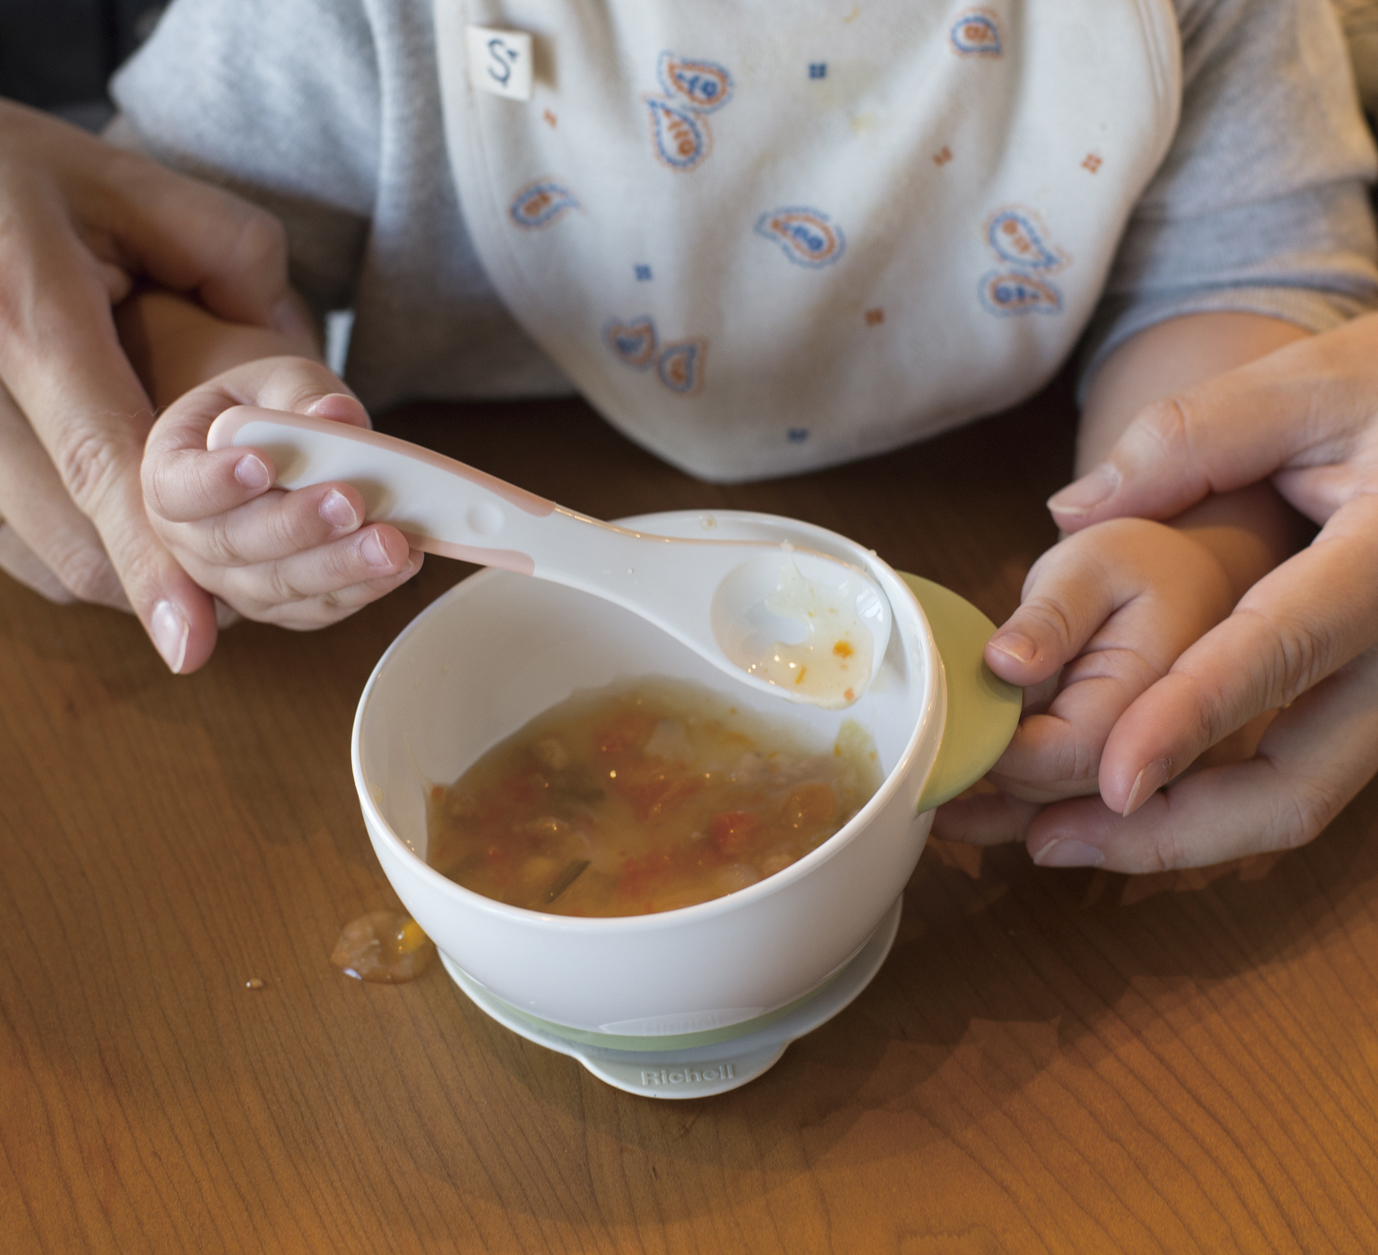 Bộ muỗng và nĩa TLI Richell Nhật Bản - bước 3 có hộp đựng cho bé tự ăn | Baby